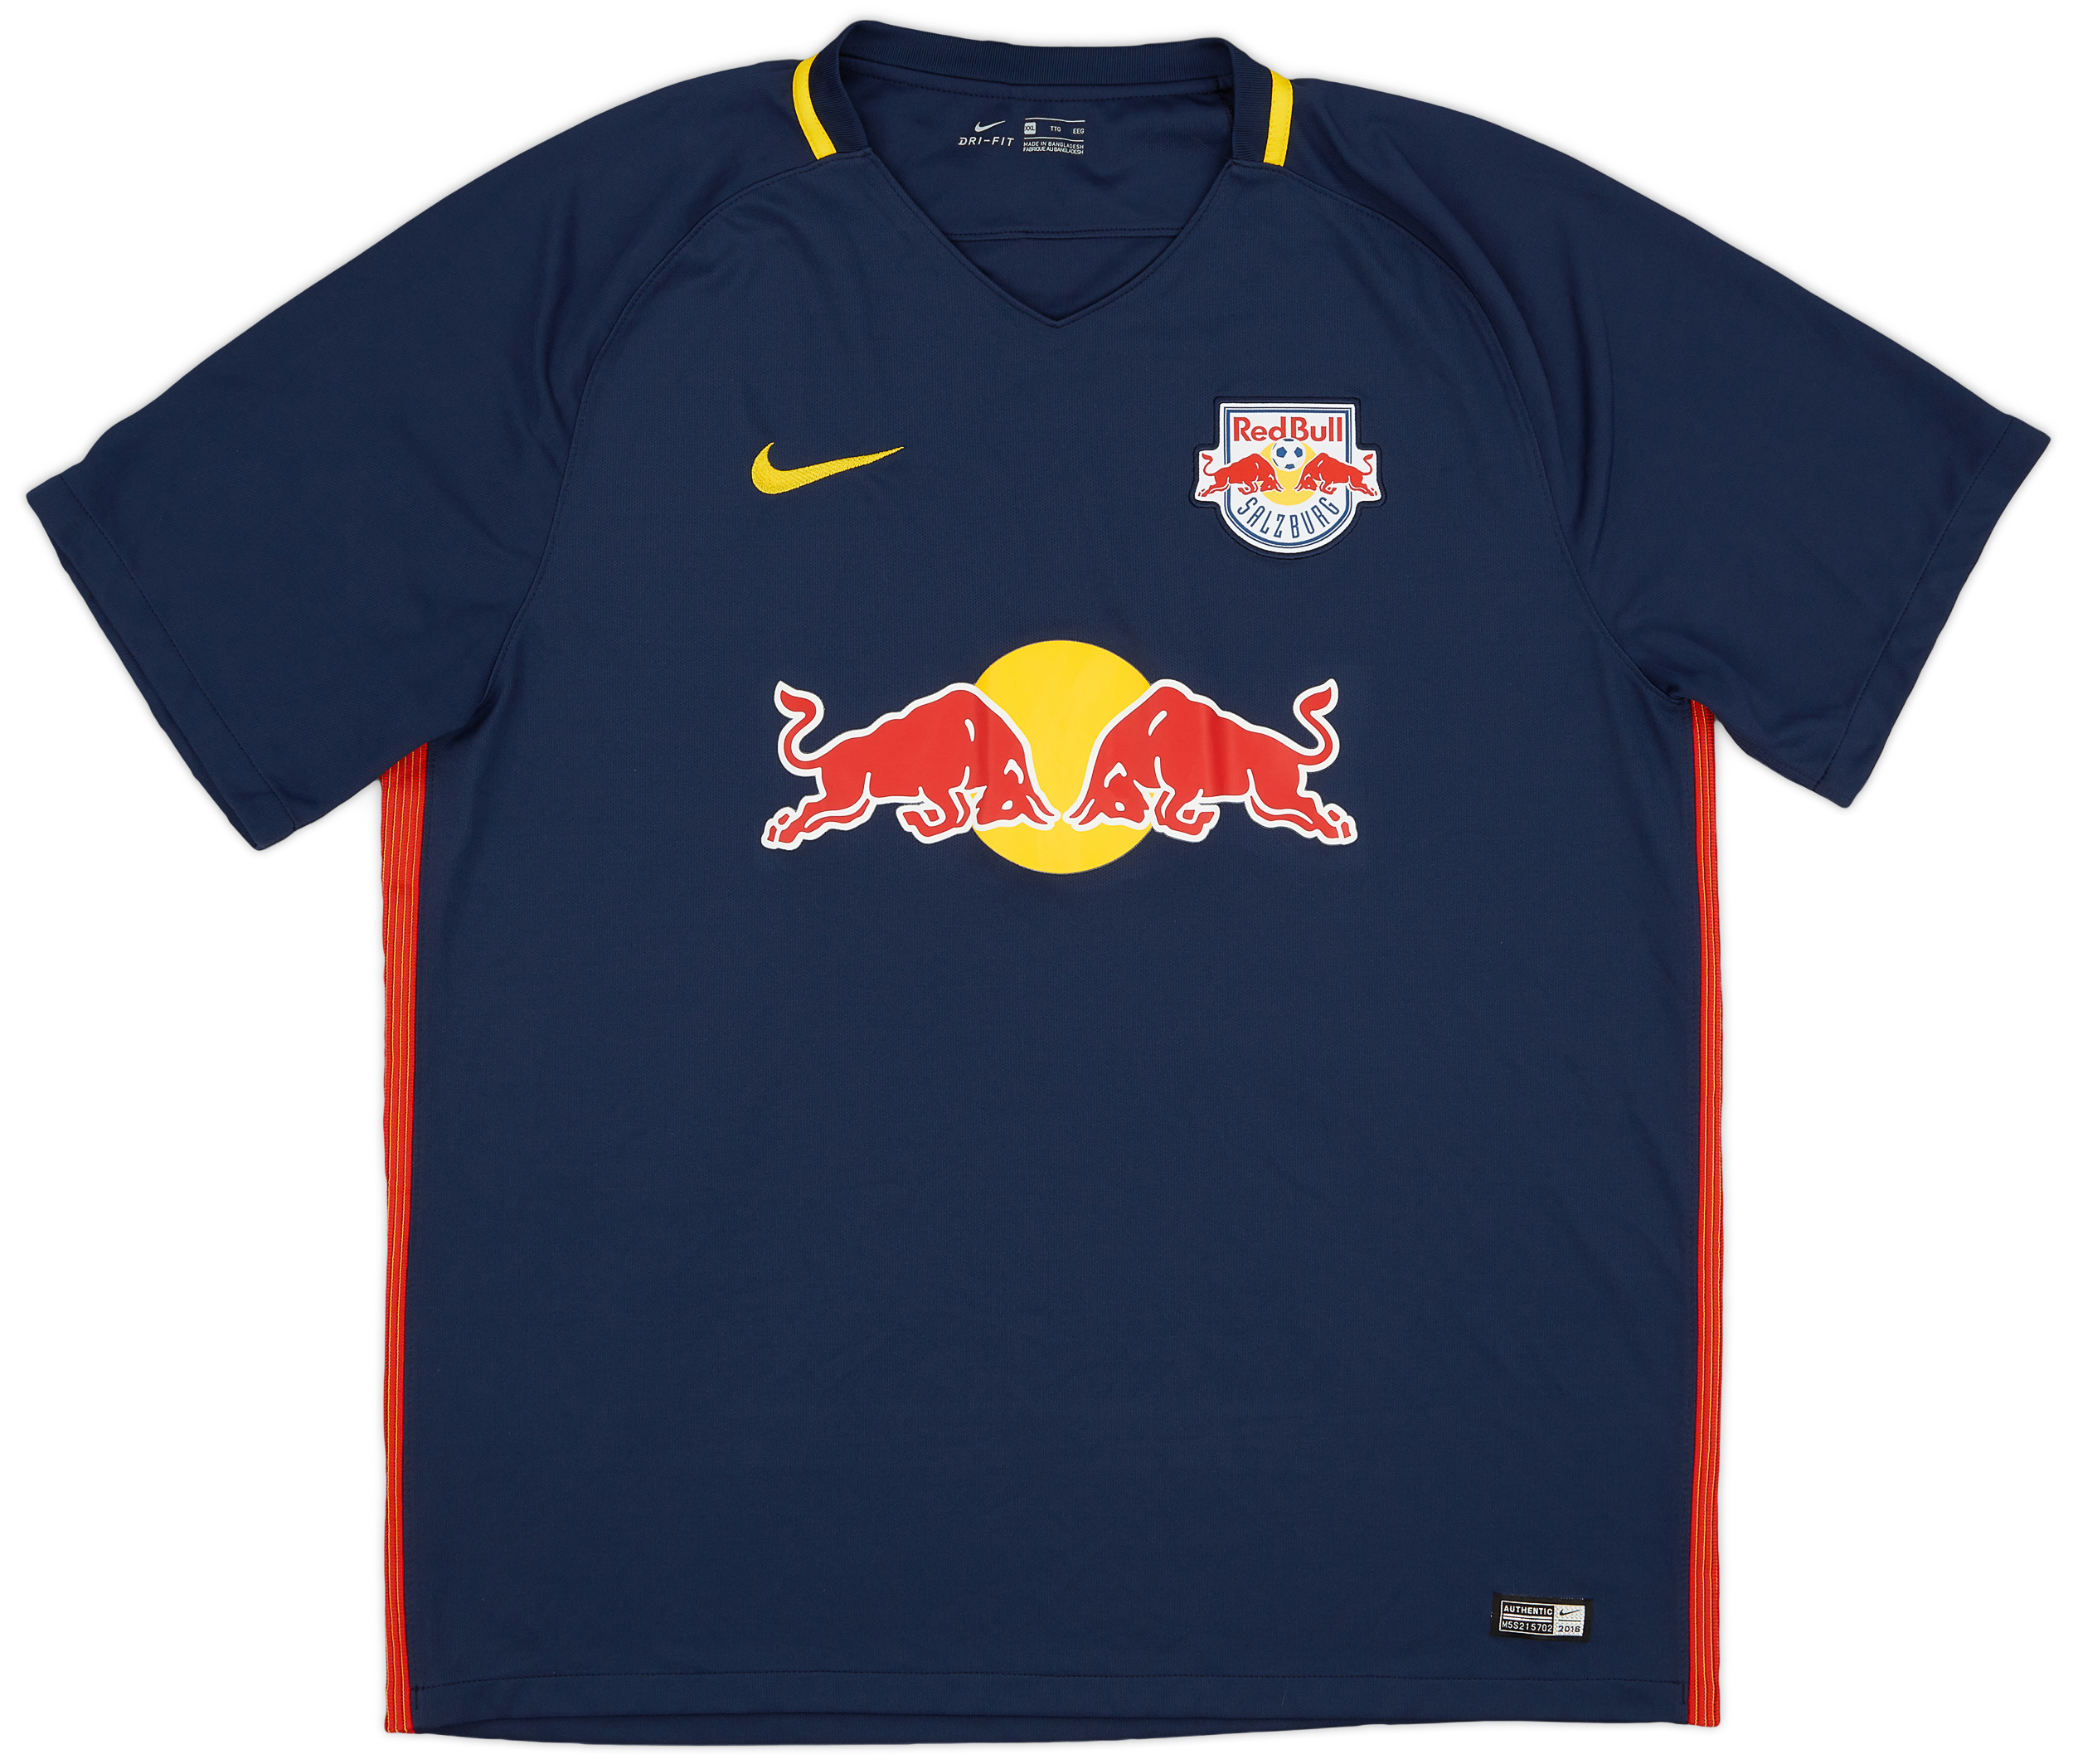 2016-17 Red Bull Salzburg Home Shirt - 9/10 - ()